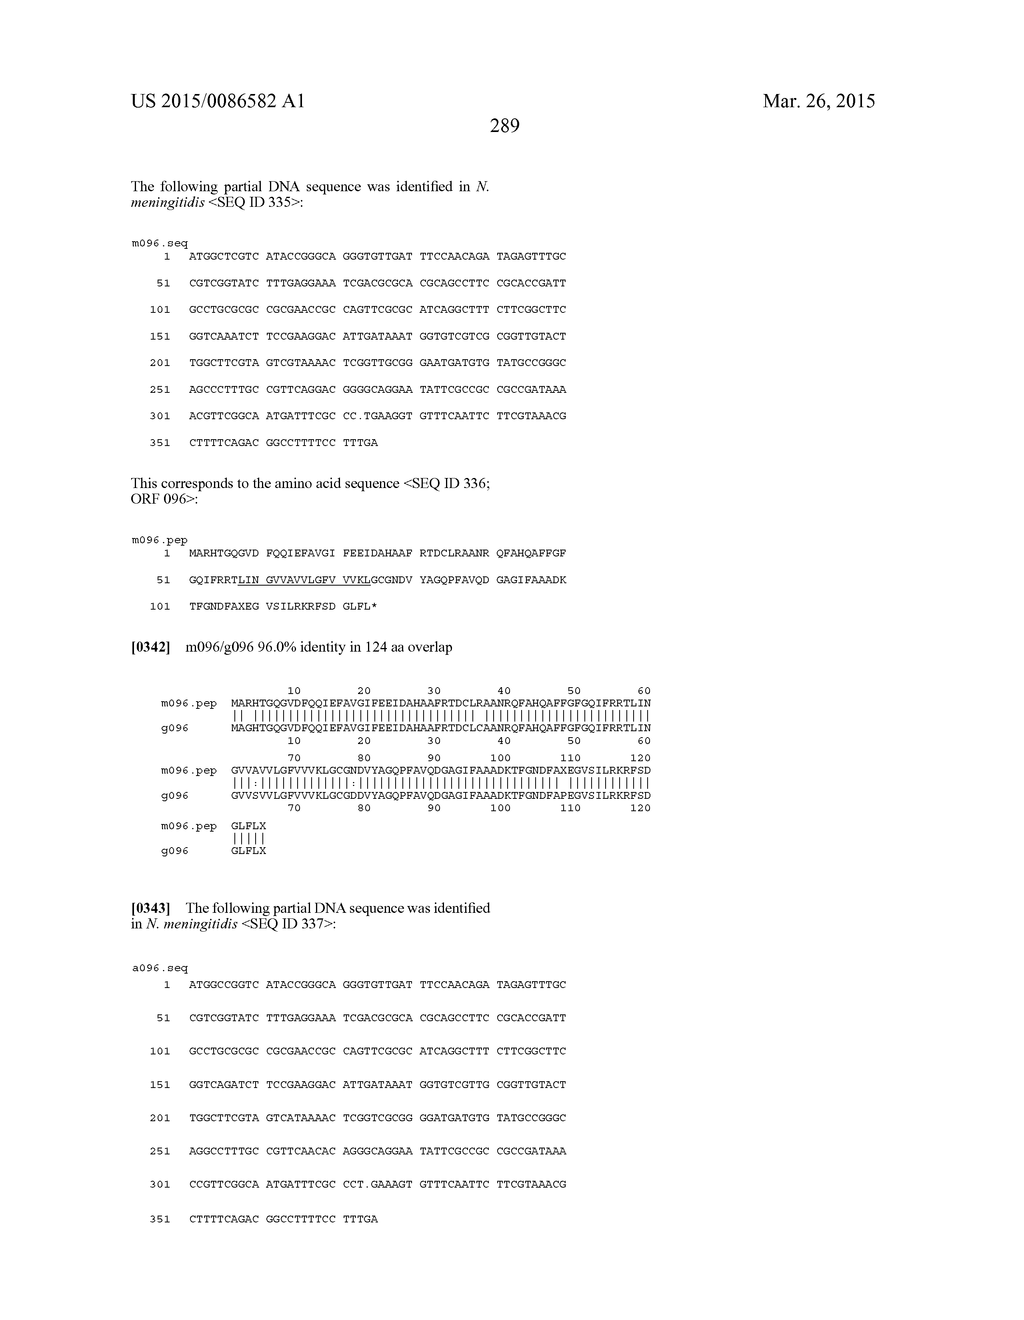 NEISSERIA MENINGITIDIS ANTIGENS AND COMPOSITIONS - diagram, schematic, and image 321